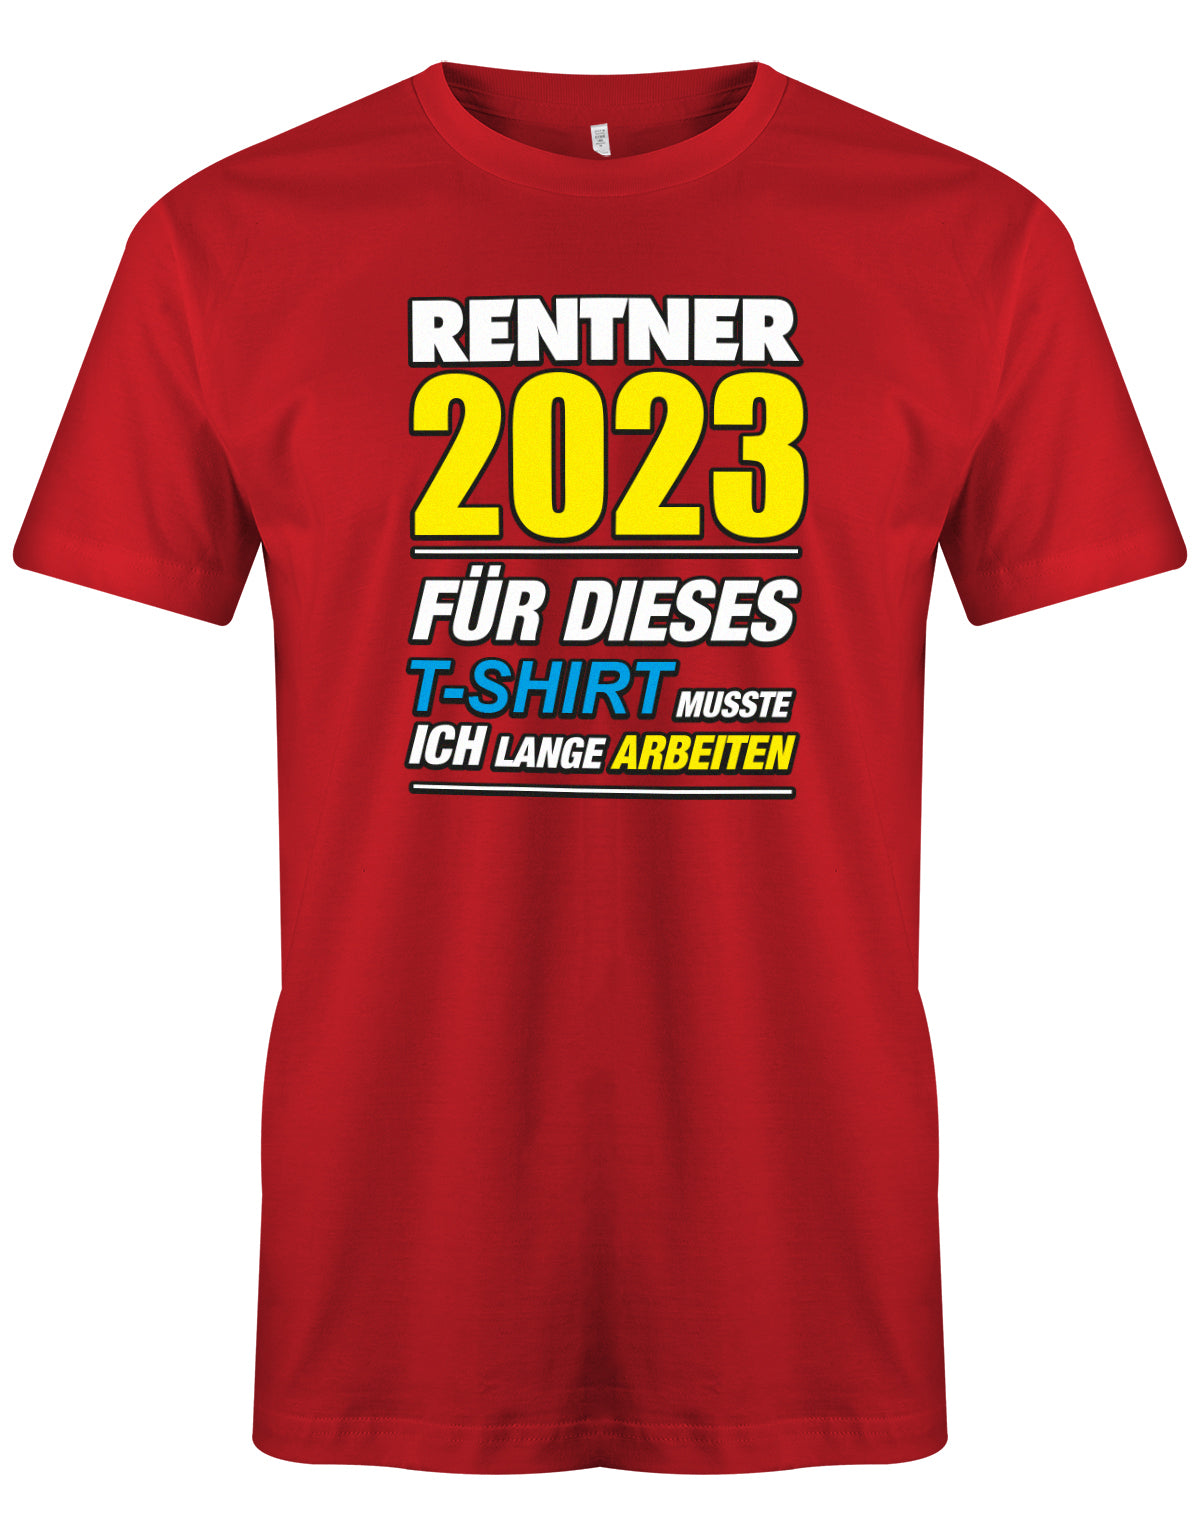 Rentner 2023 für dieses T-Shirt musste ich lange arbeiten - Männer T-Shirt Rot